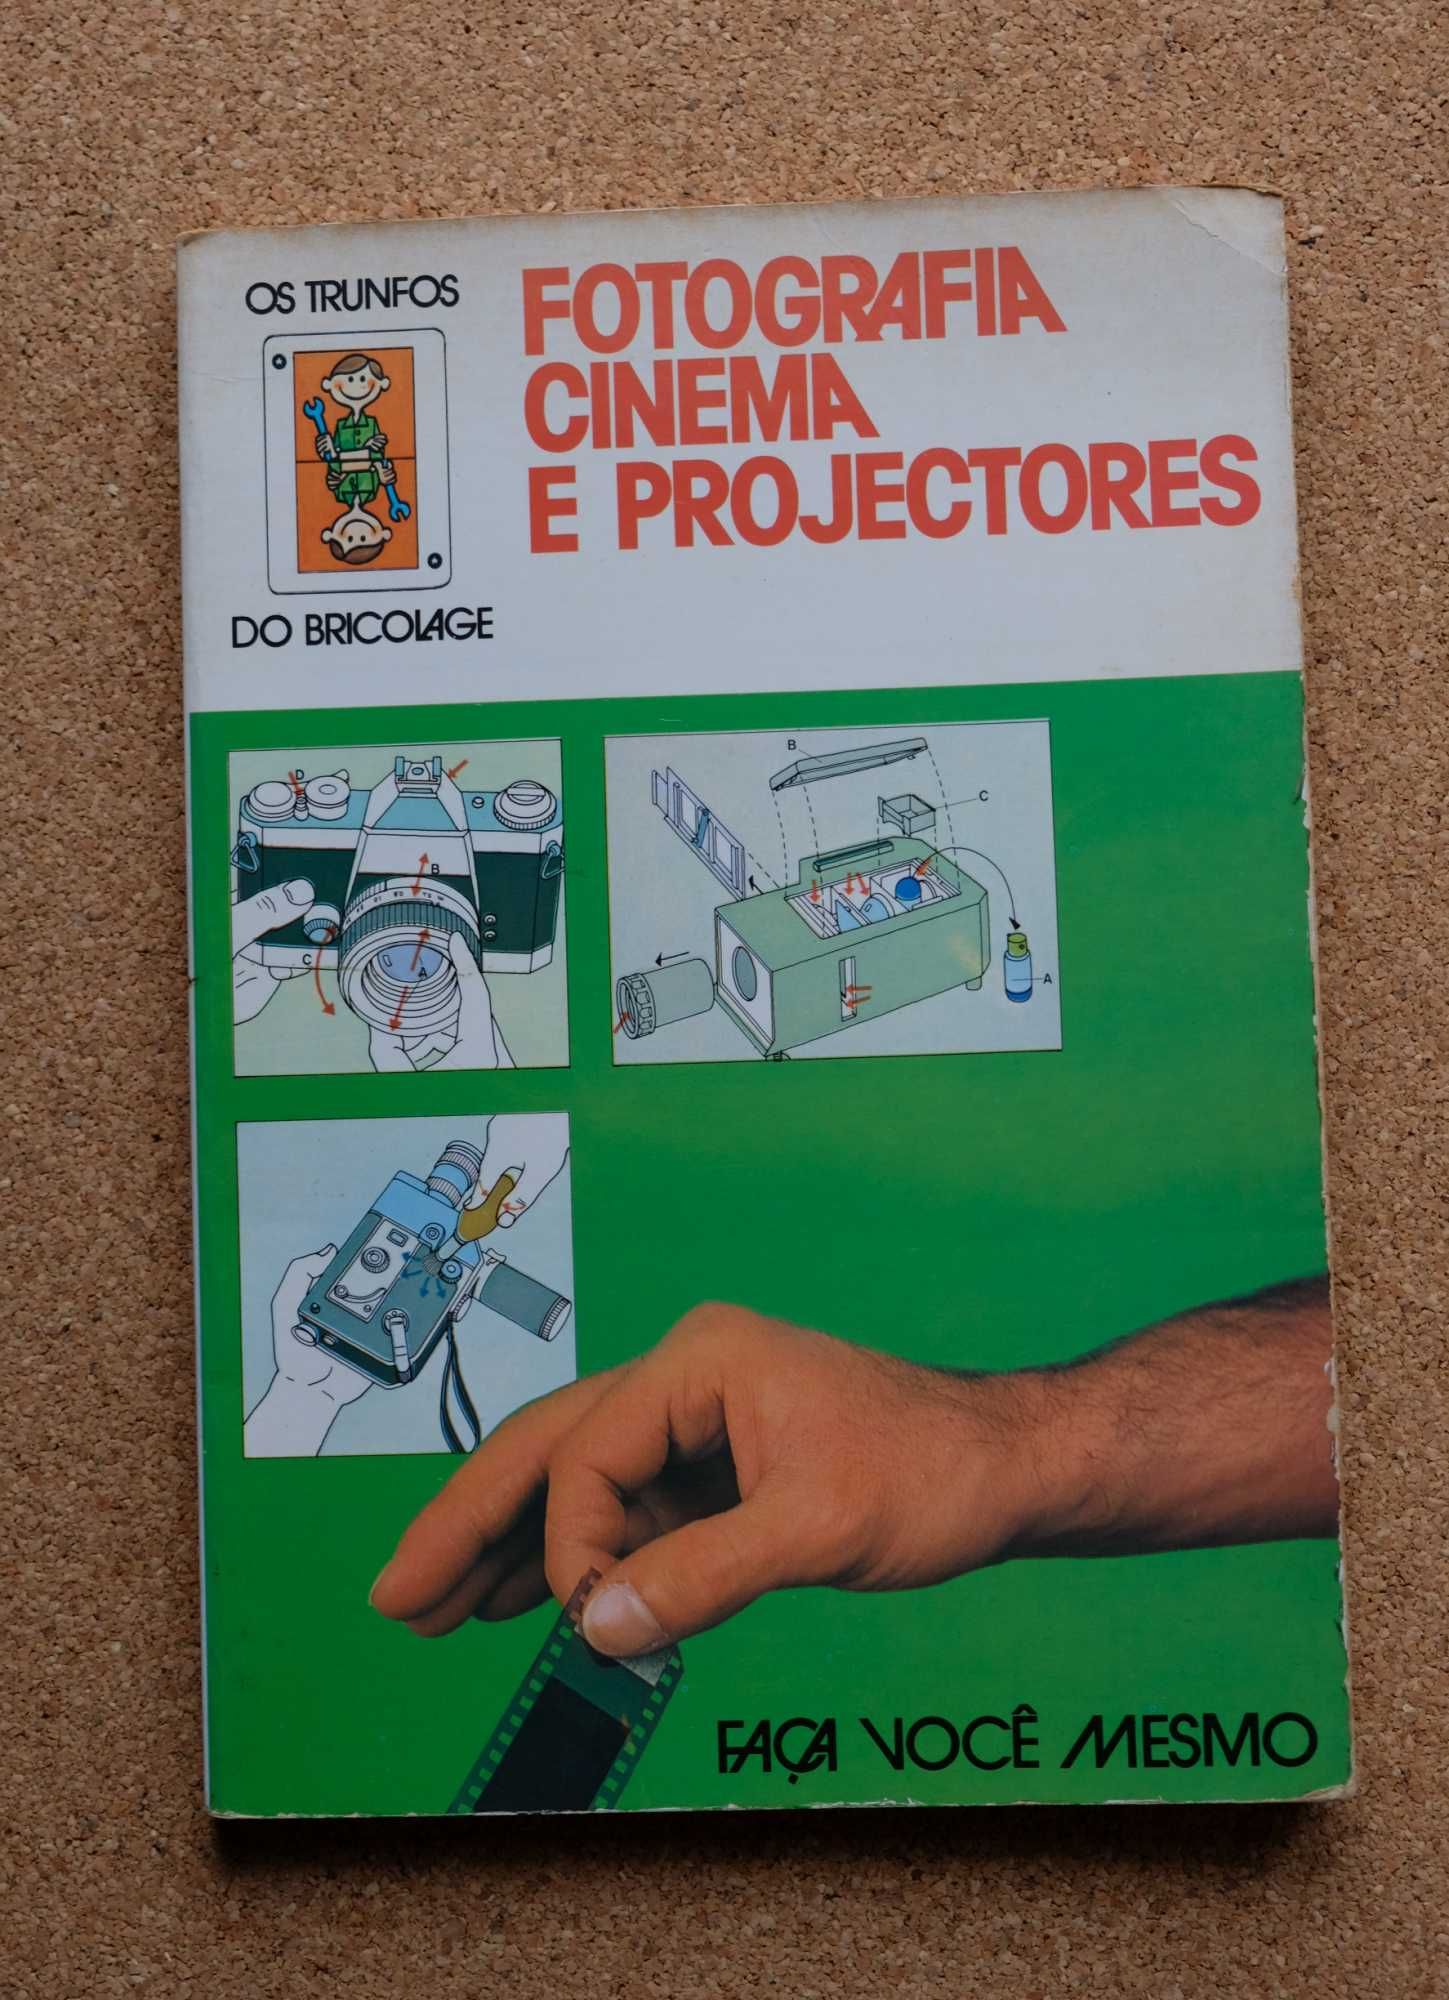 Fotografia cinema e projectores (1977)